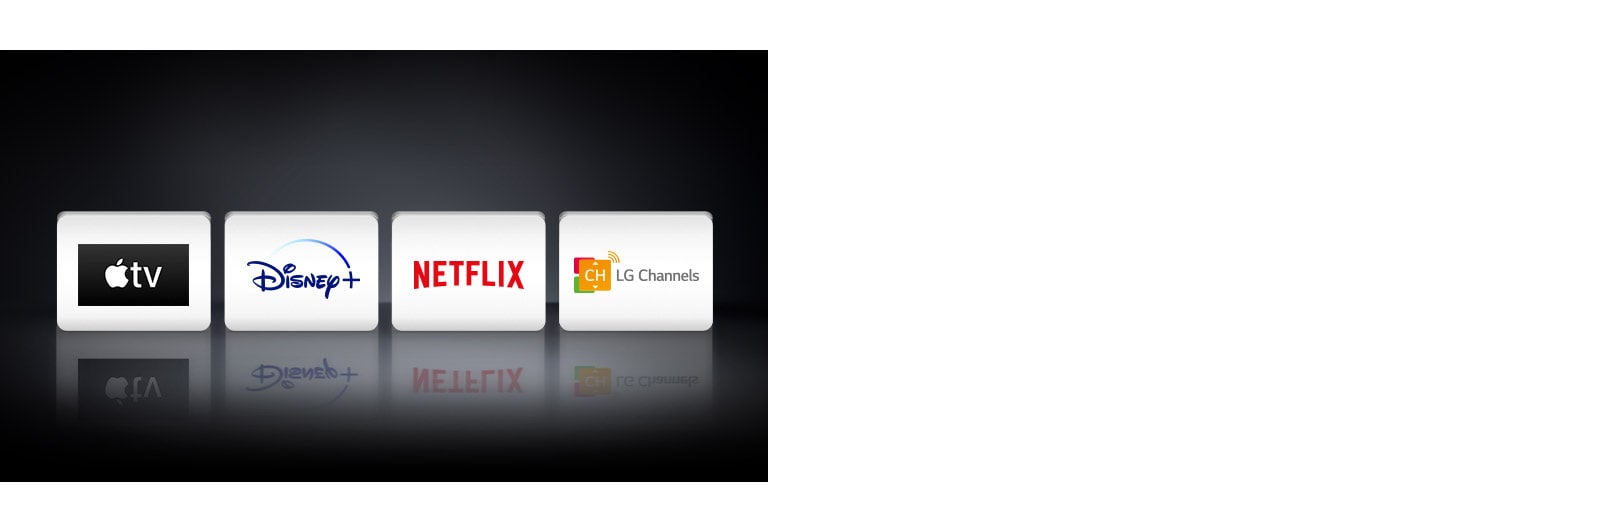 Cuatro logotipos: Apple TV, Disney+, Netflix y LG Channels